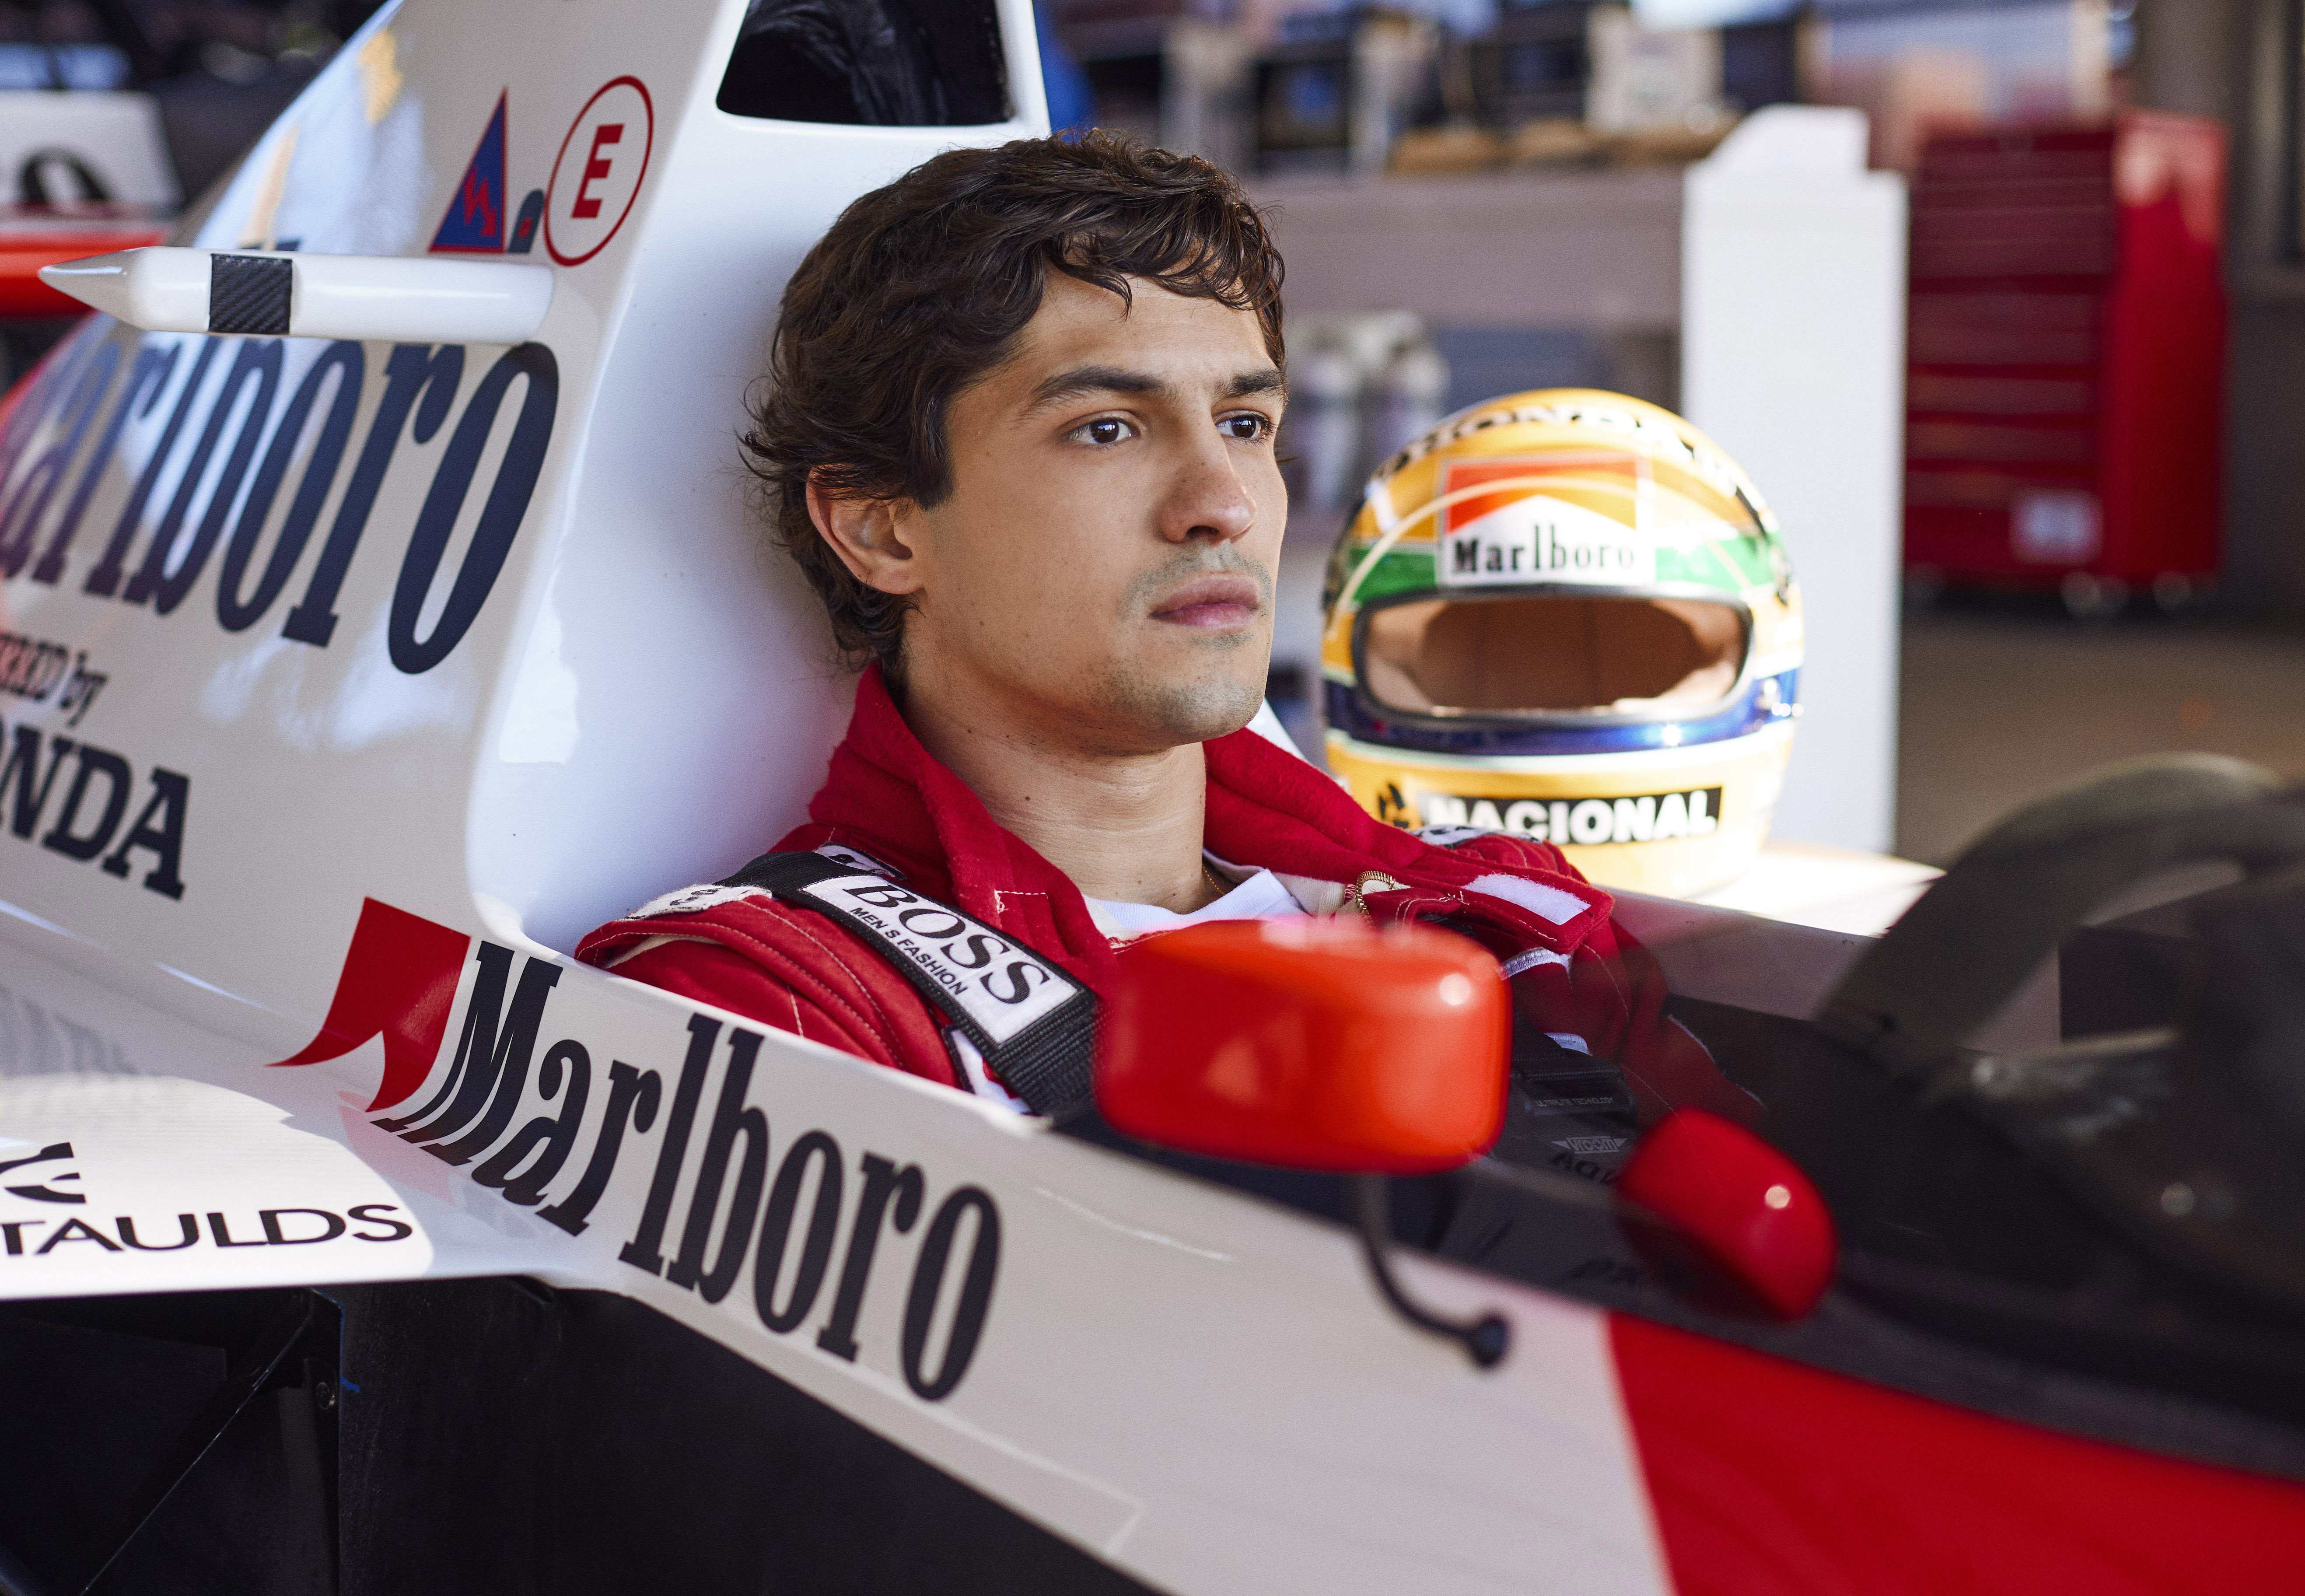 Senna (Gabriel Leone) sentado dentro de sua McLaren, com semblante pensativo e seu capacete repousando ao lado.